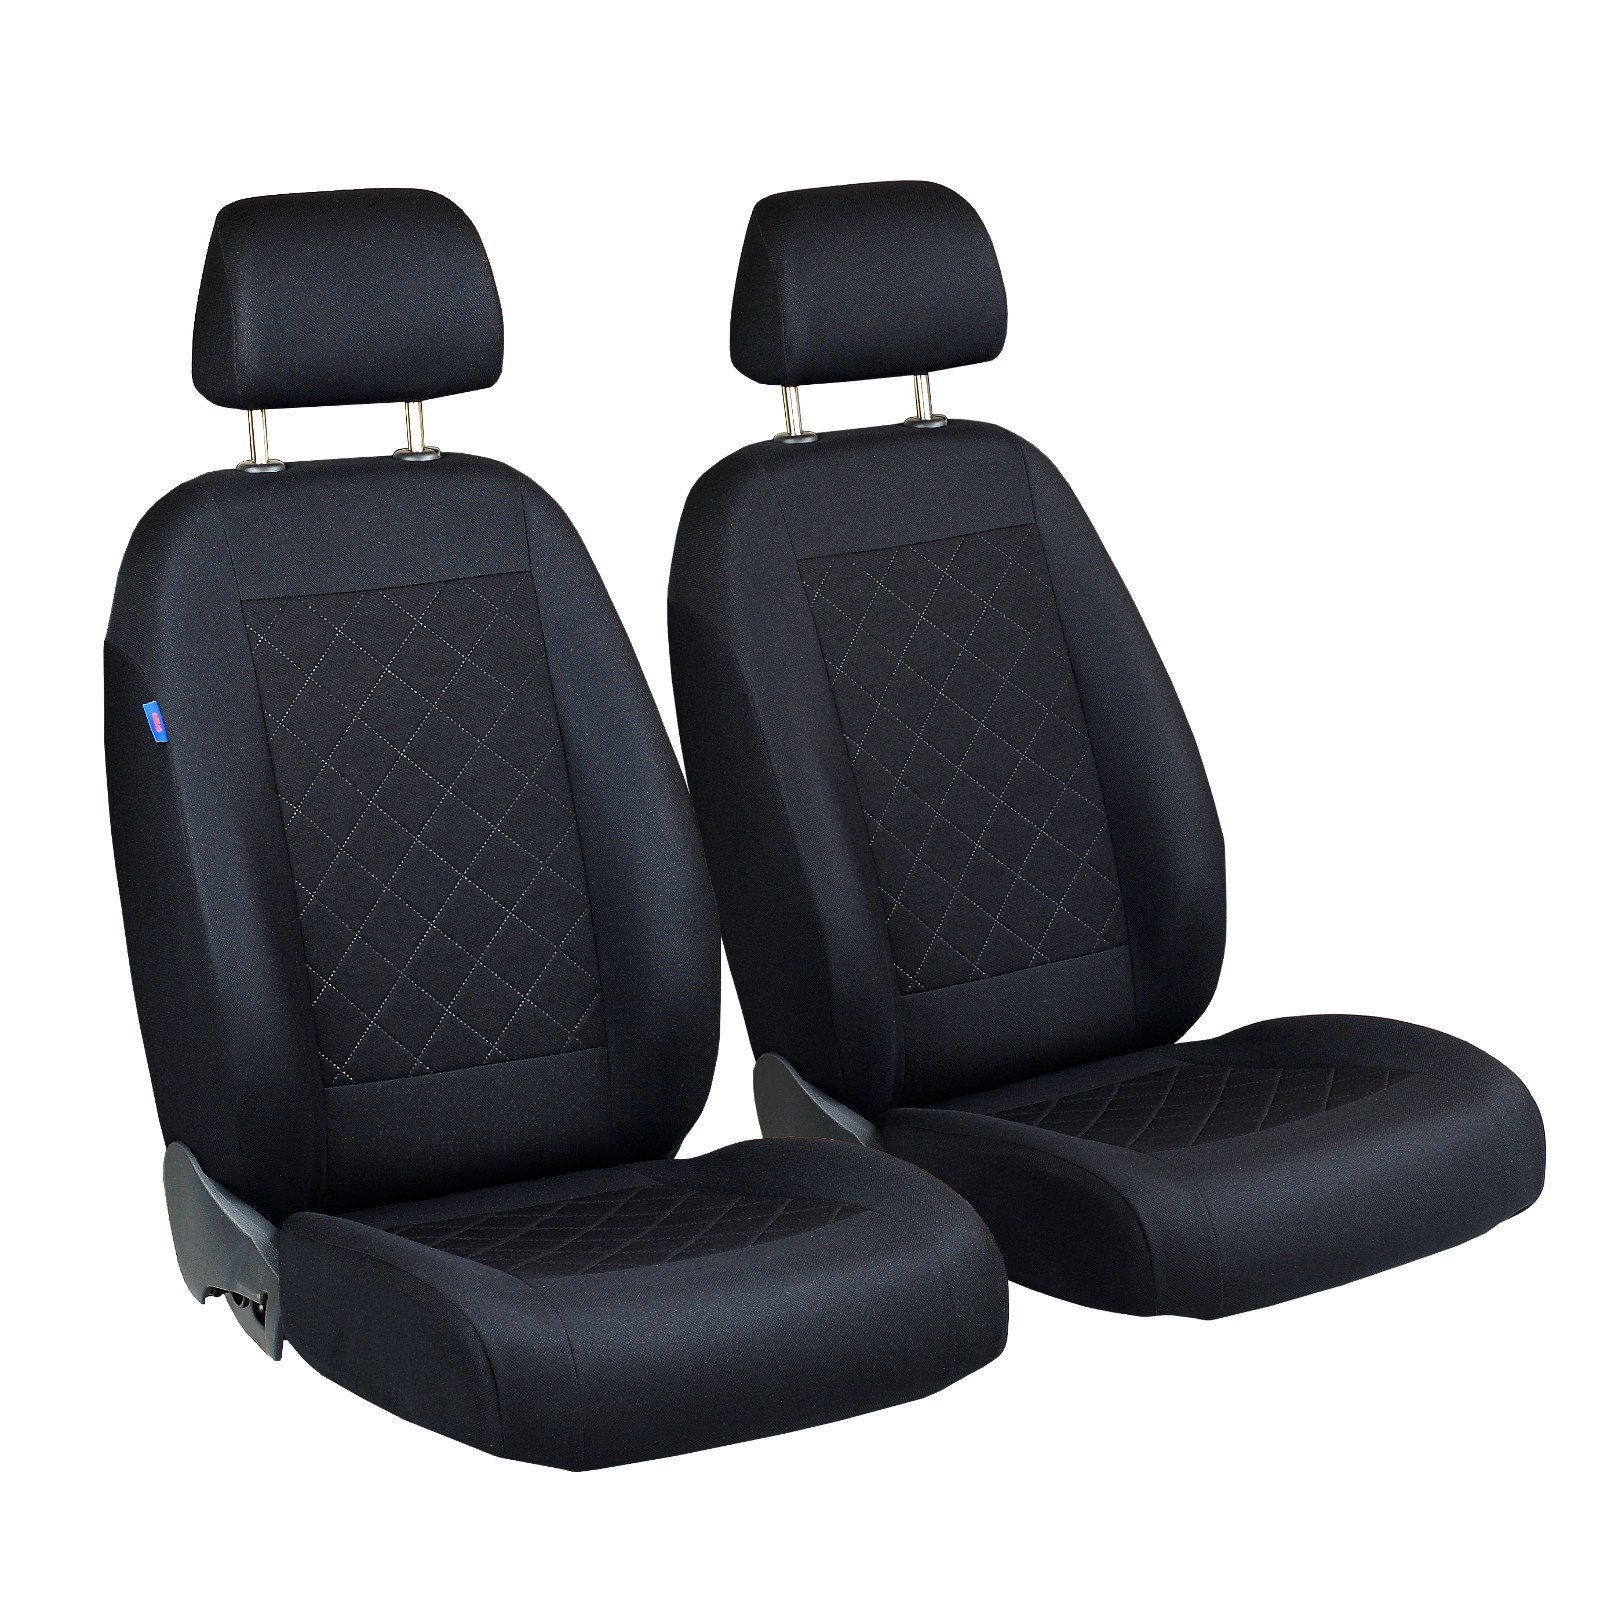 C5 Vorne Sitzbezüge - für Fahrer und Beifahrer - Farbe Premium Schwarz gepresstes Karomuster